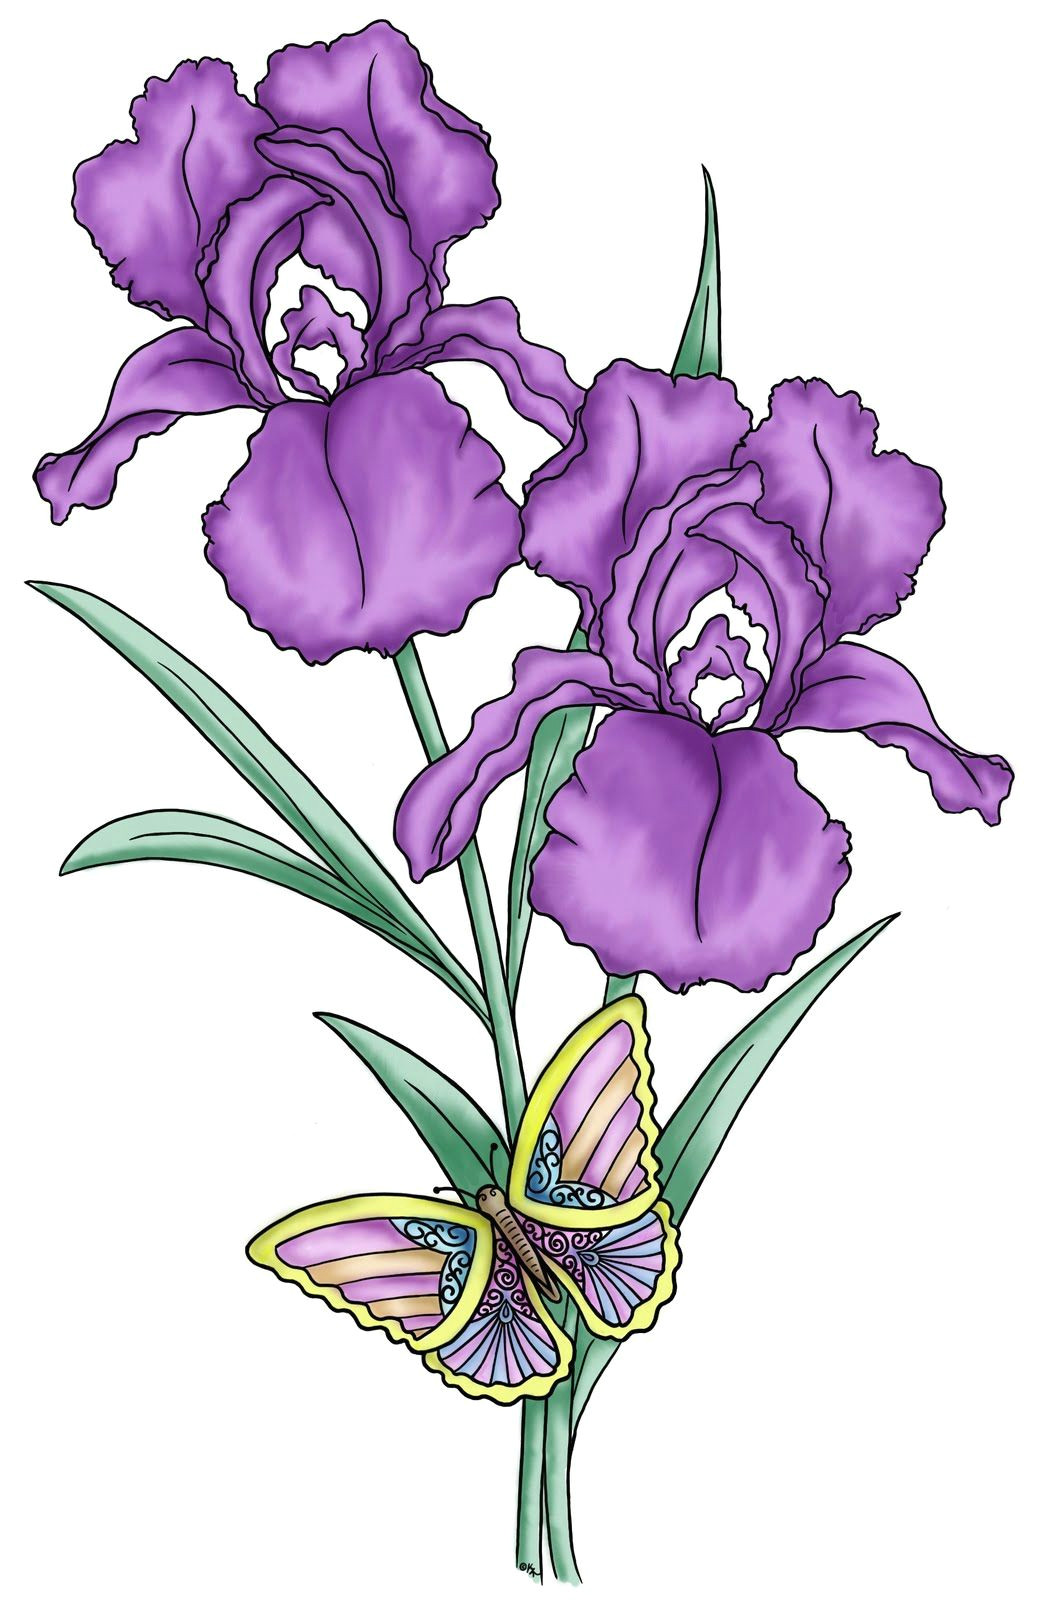 Drawings Of Purple Roses Flower Drawings Google Search Flowers Pinterest Flowers